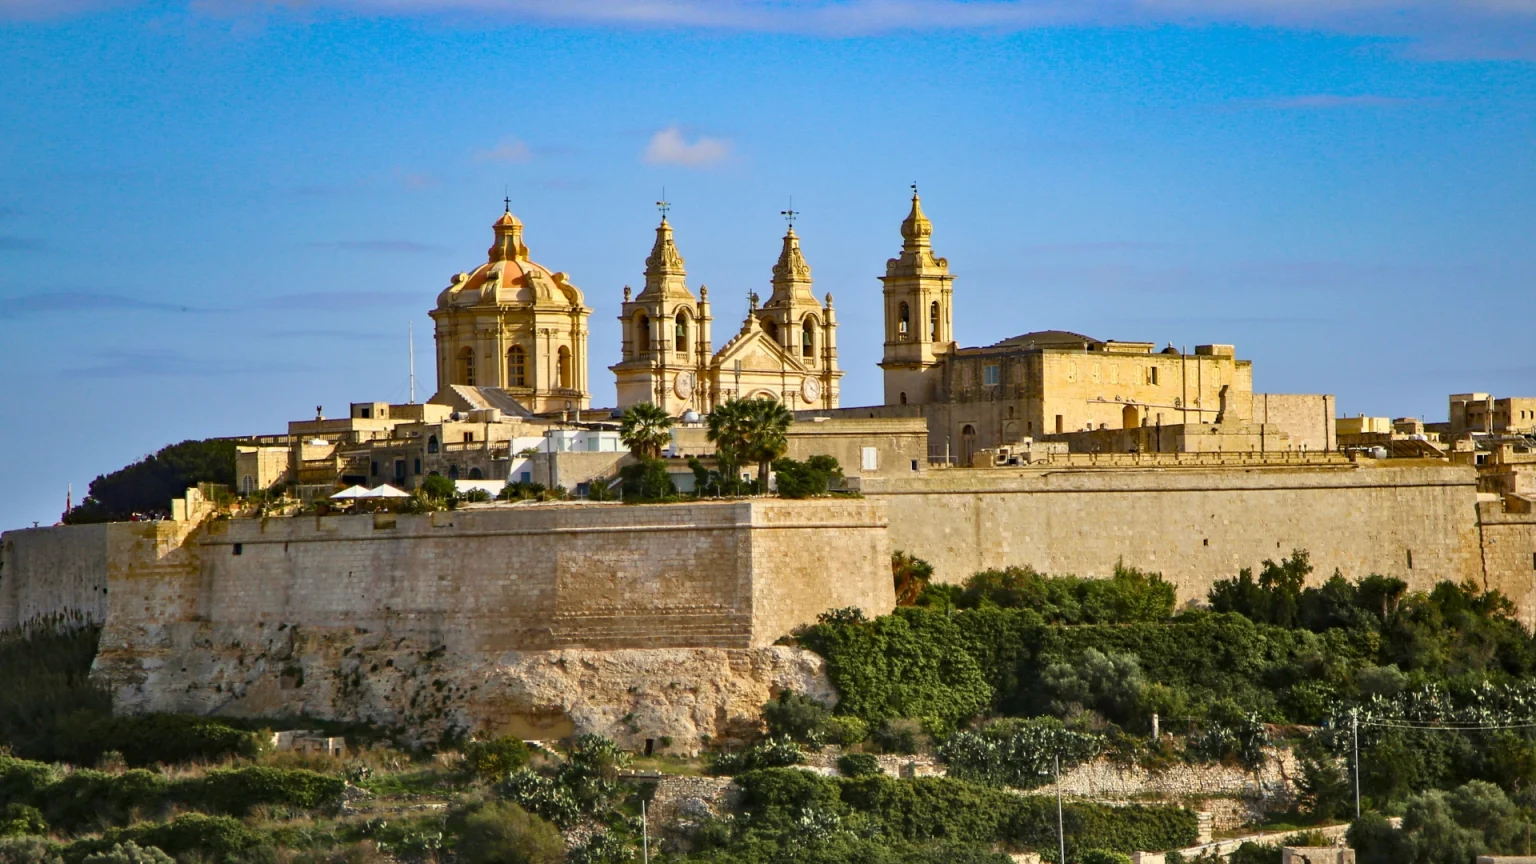 Pellegrinaggio a Malta: Mdina